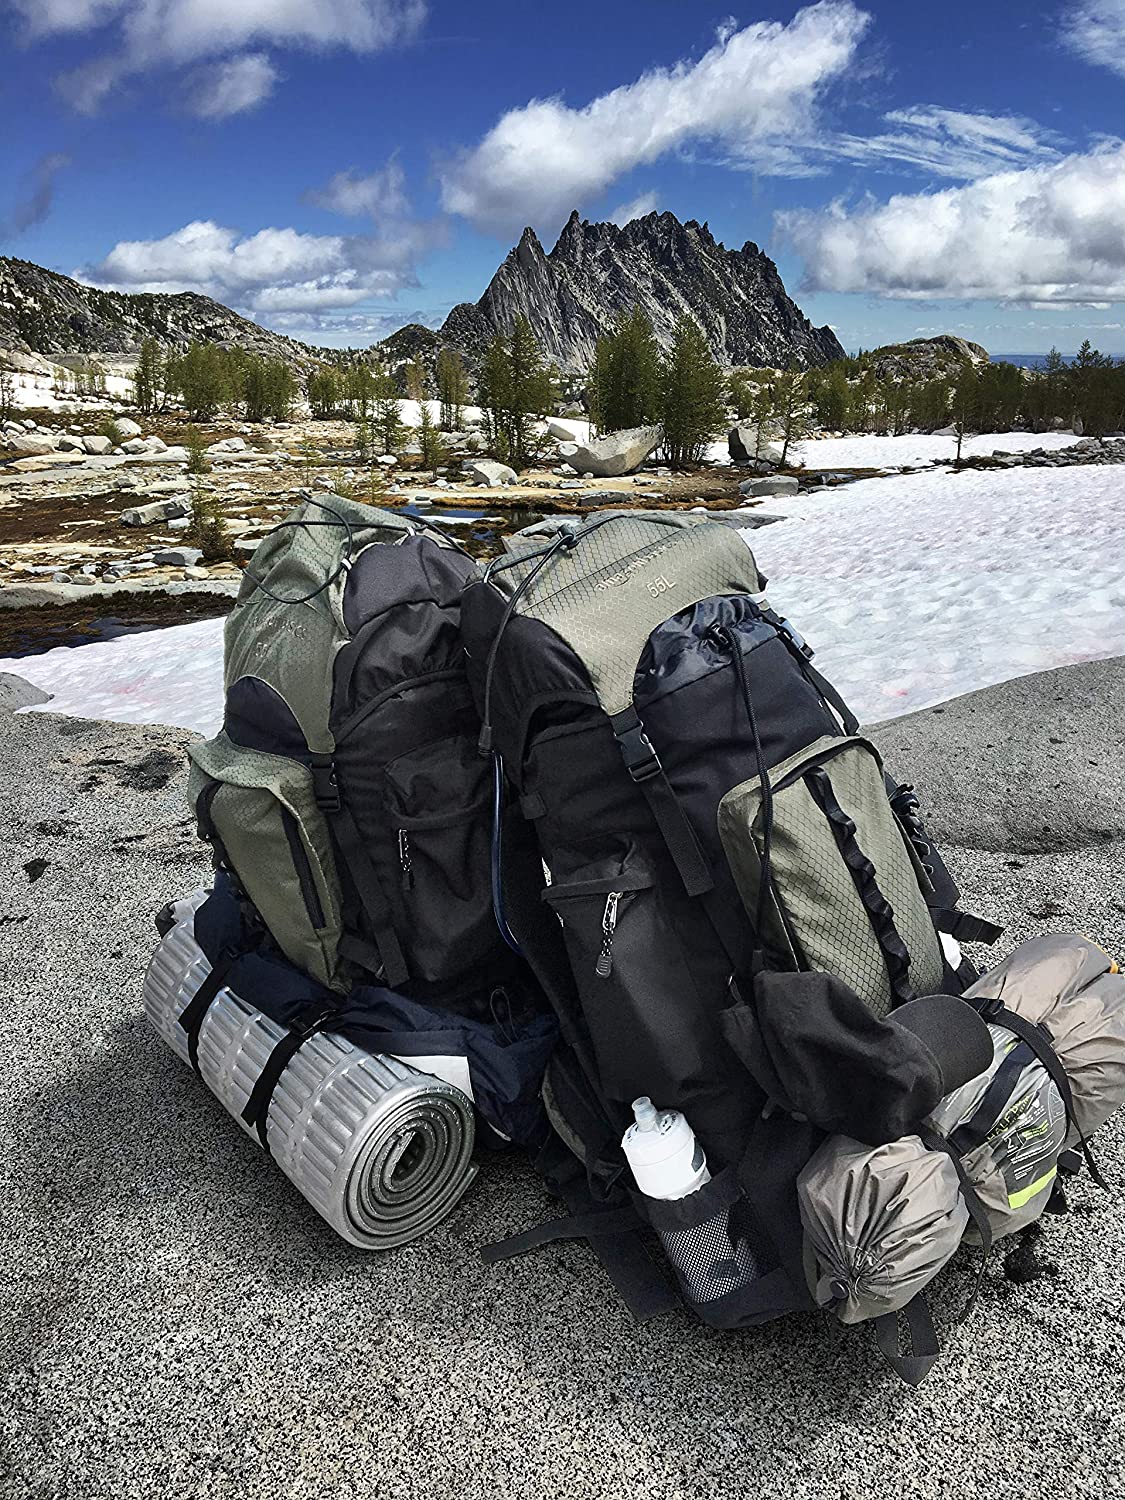 Completamente seco capitán vitalidad Las mejores mochilas de trekking y camping